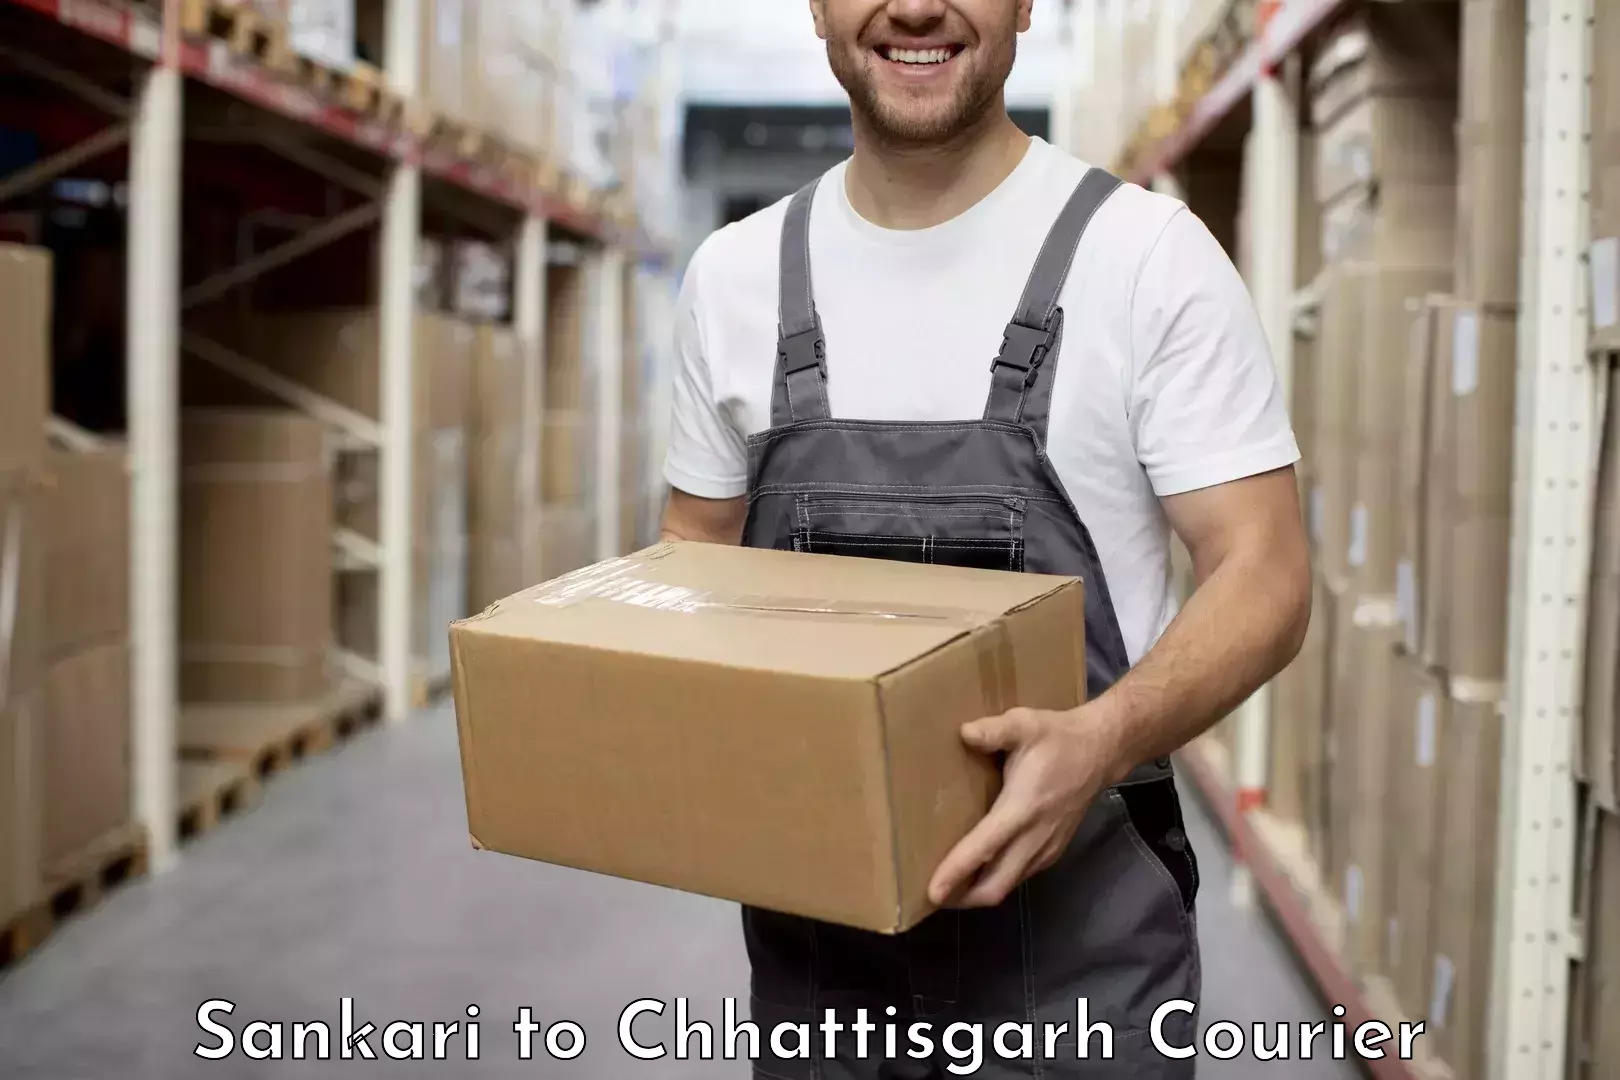 Express delivery capabilities Sankari to Chhattisgarh